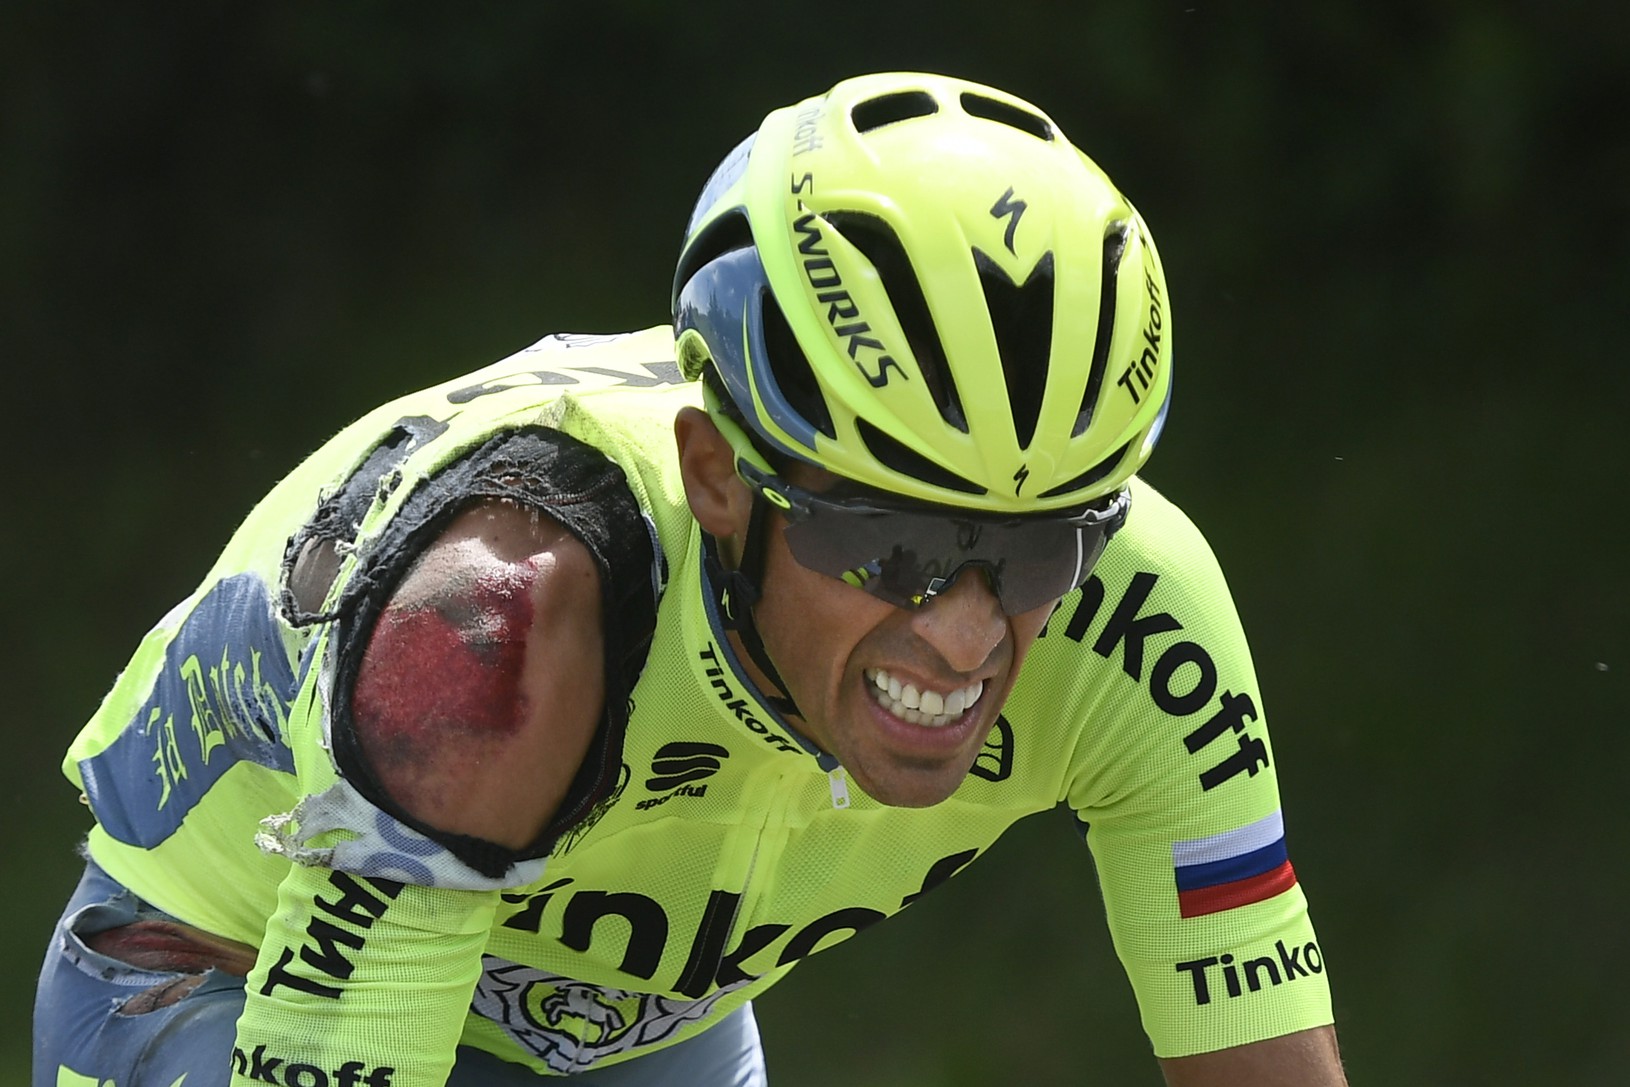 Alberto Contador po páde